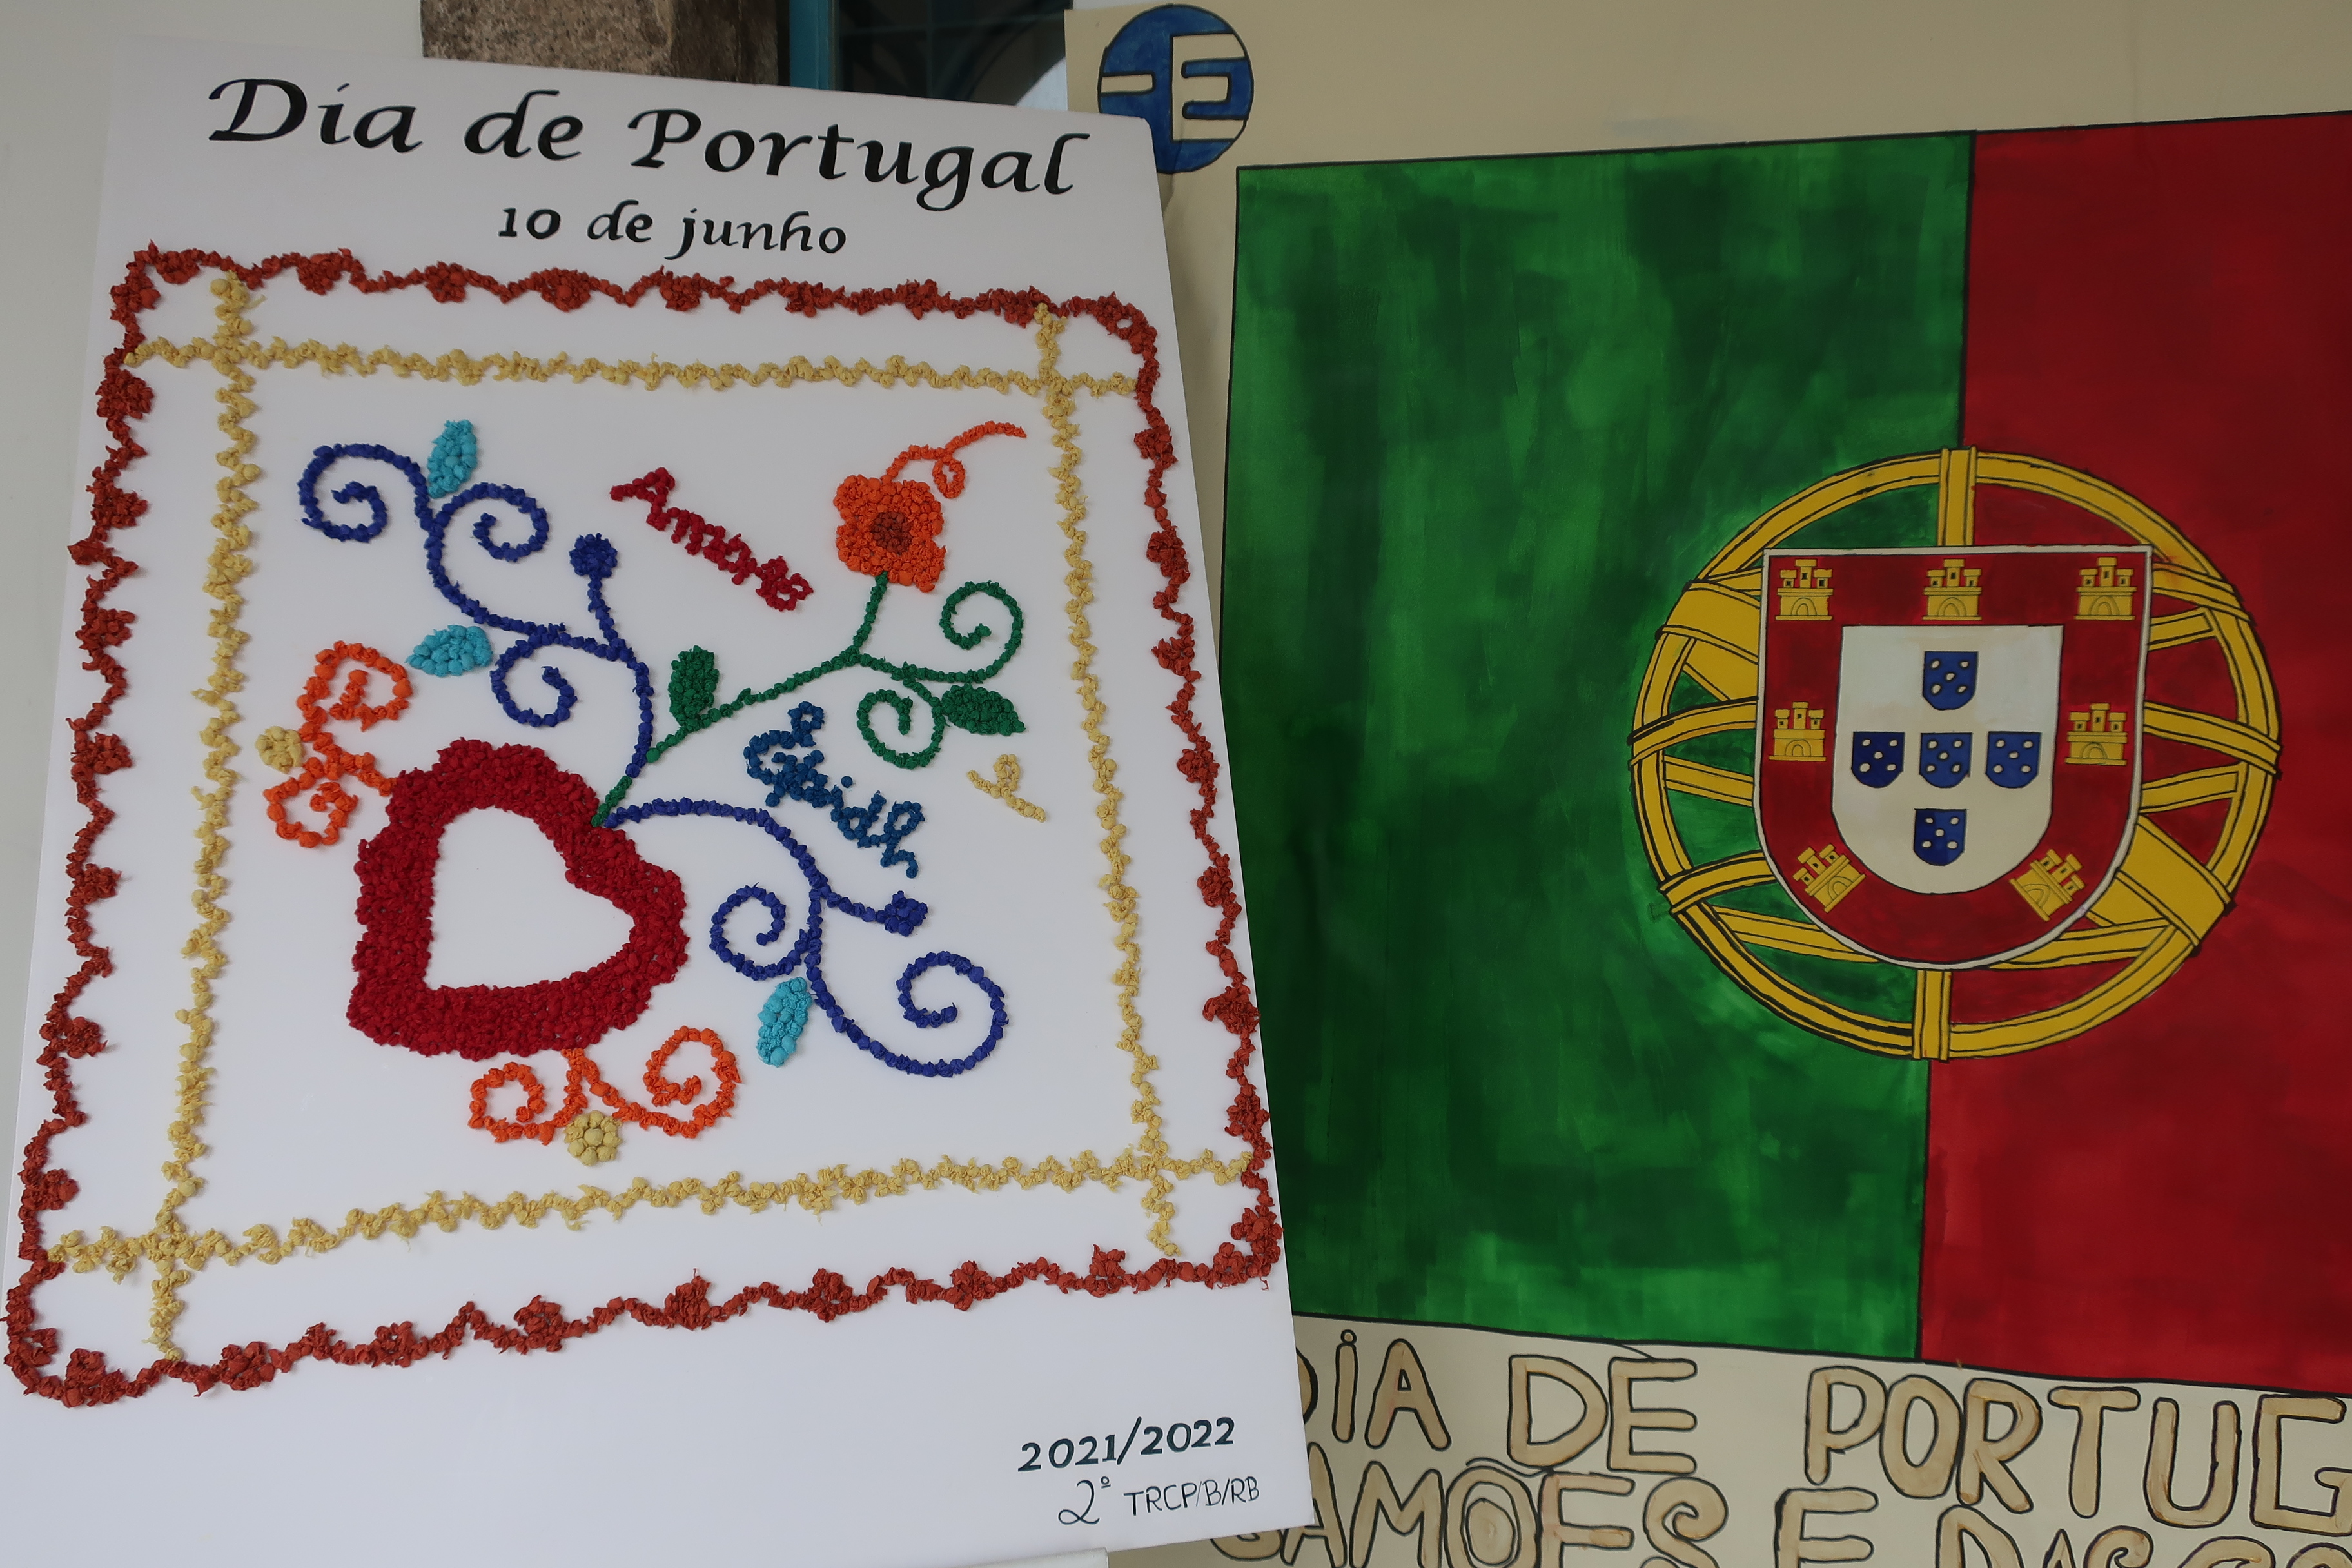 Dia de Portugal - 10 de junho